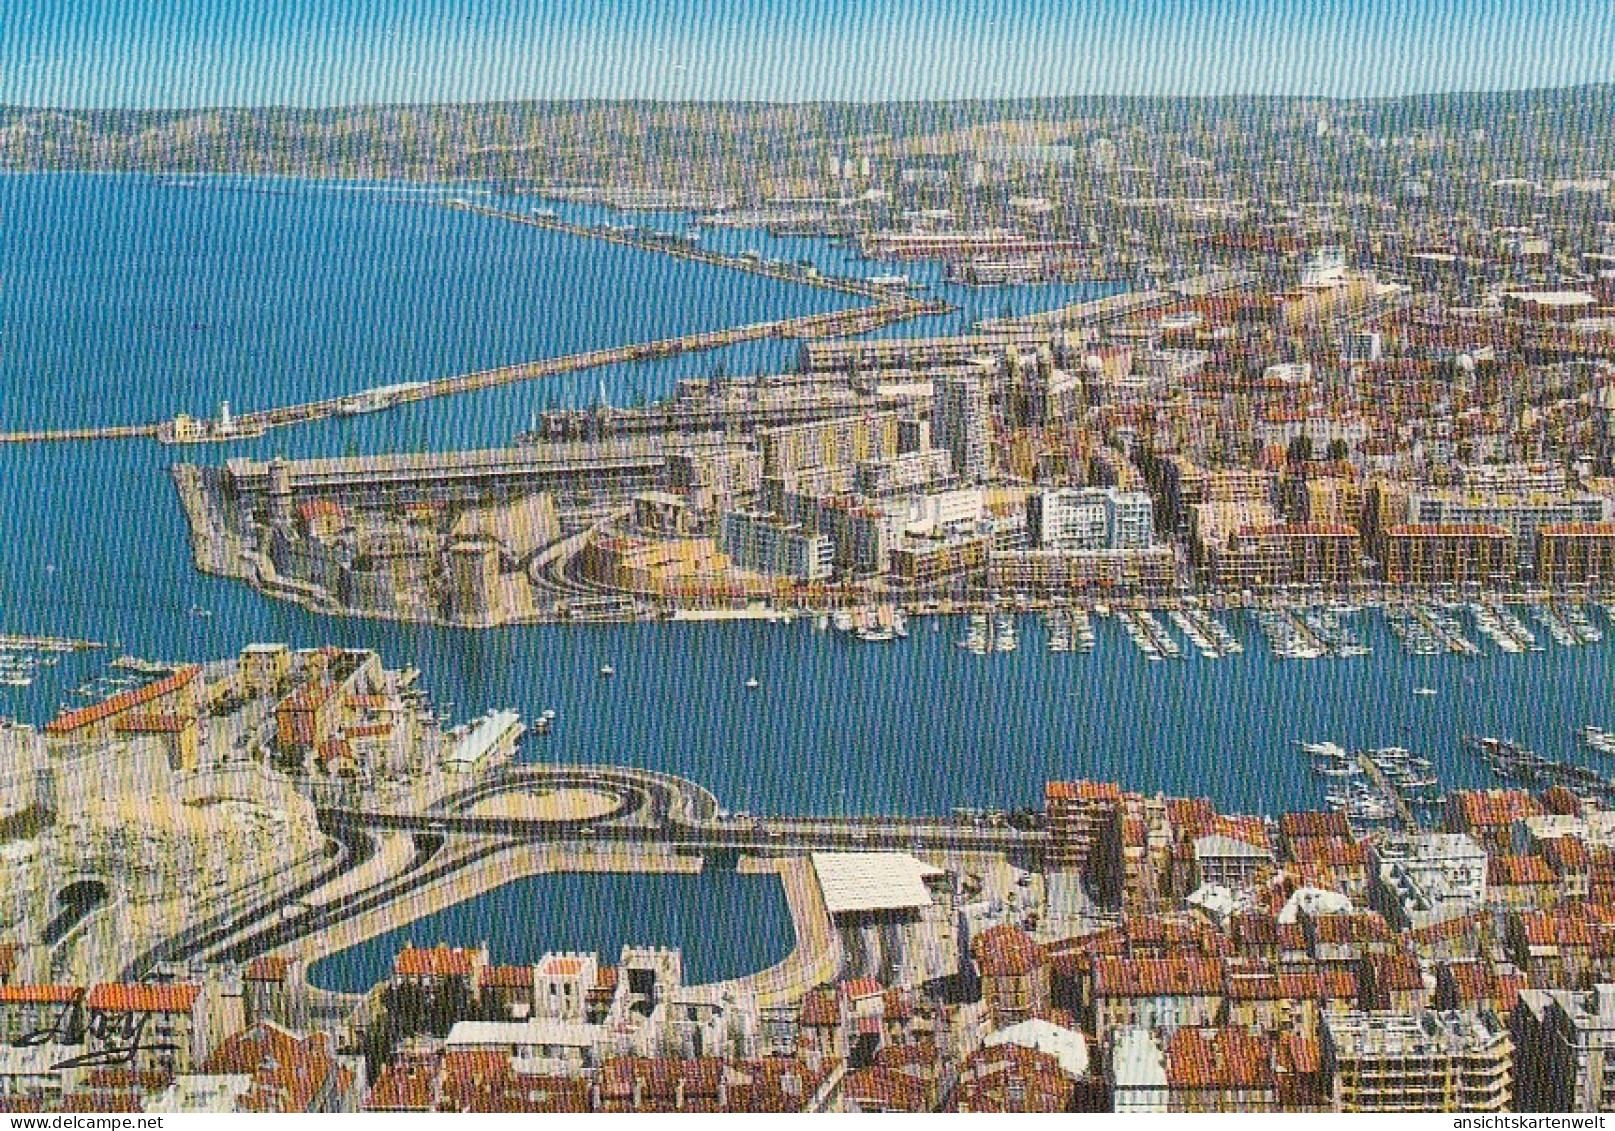 Marseille (B.-du-Rh.) Le Port Et L'entrée Du Tunnel Ngl #E4410 - Vieux Port, Saint Victor, Le Panier